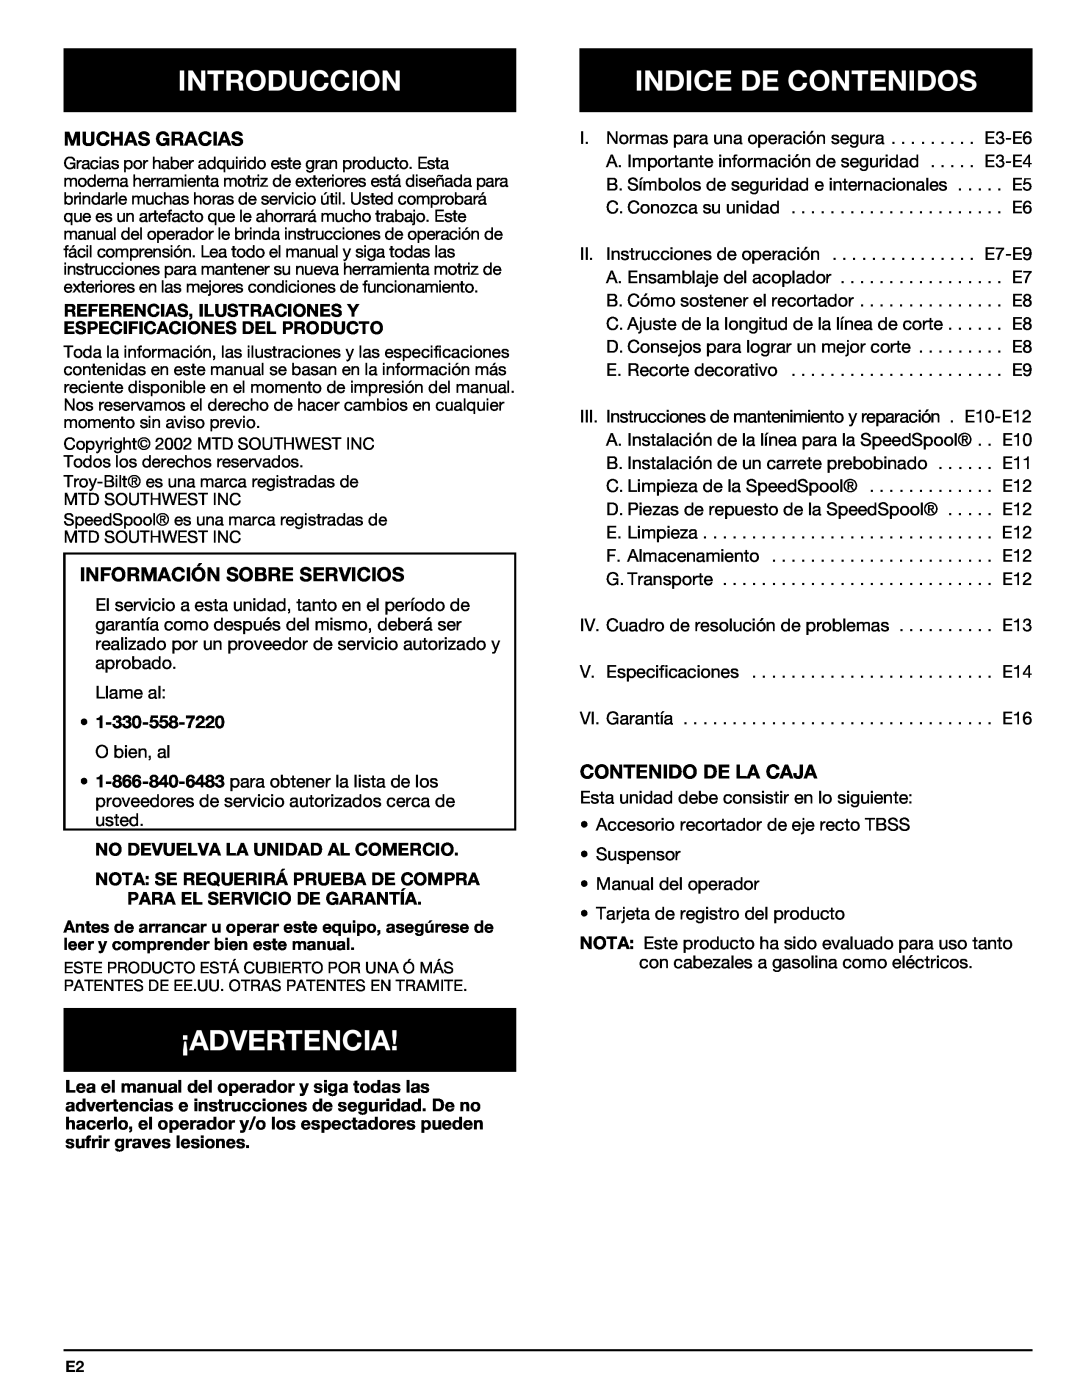 Troy-Bilt 769-00425A manual Introduccion, ¡Advertencia, Indice De Contenidos, Muchas Gracias, Información Sobre Servicios 